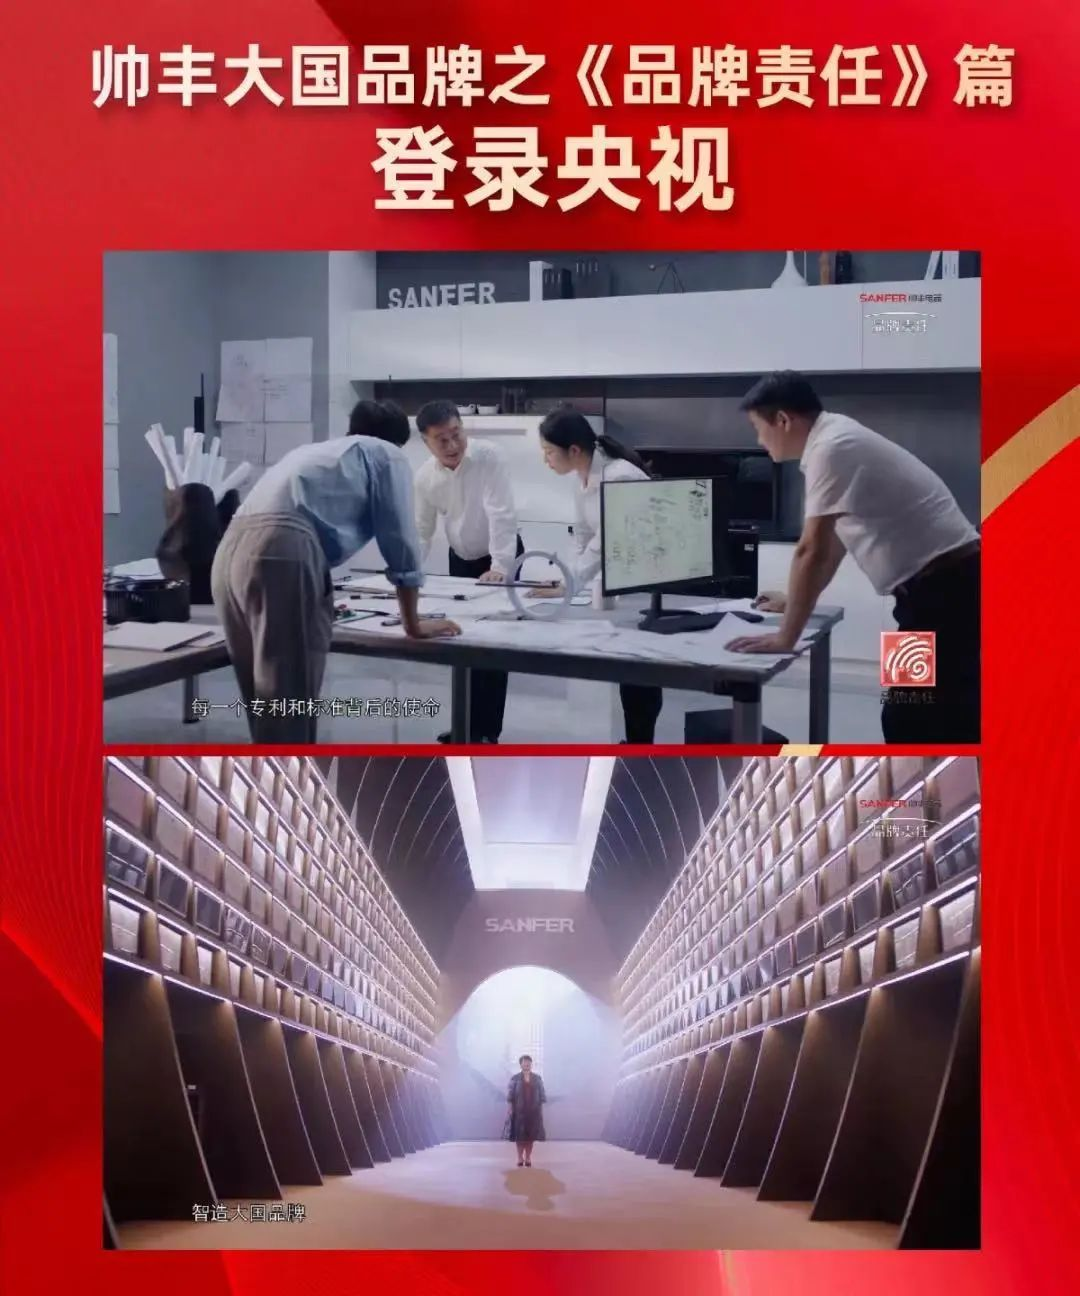 大国品牌帅丰电器宣传片在央视多频次播出，展示中国厨电品牌全新风范